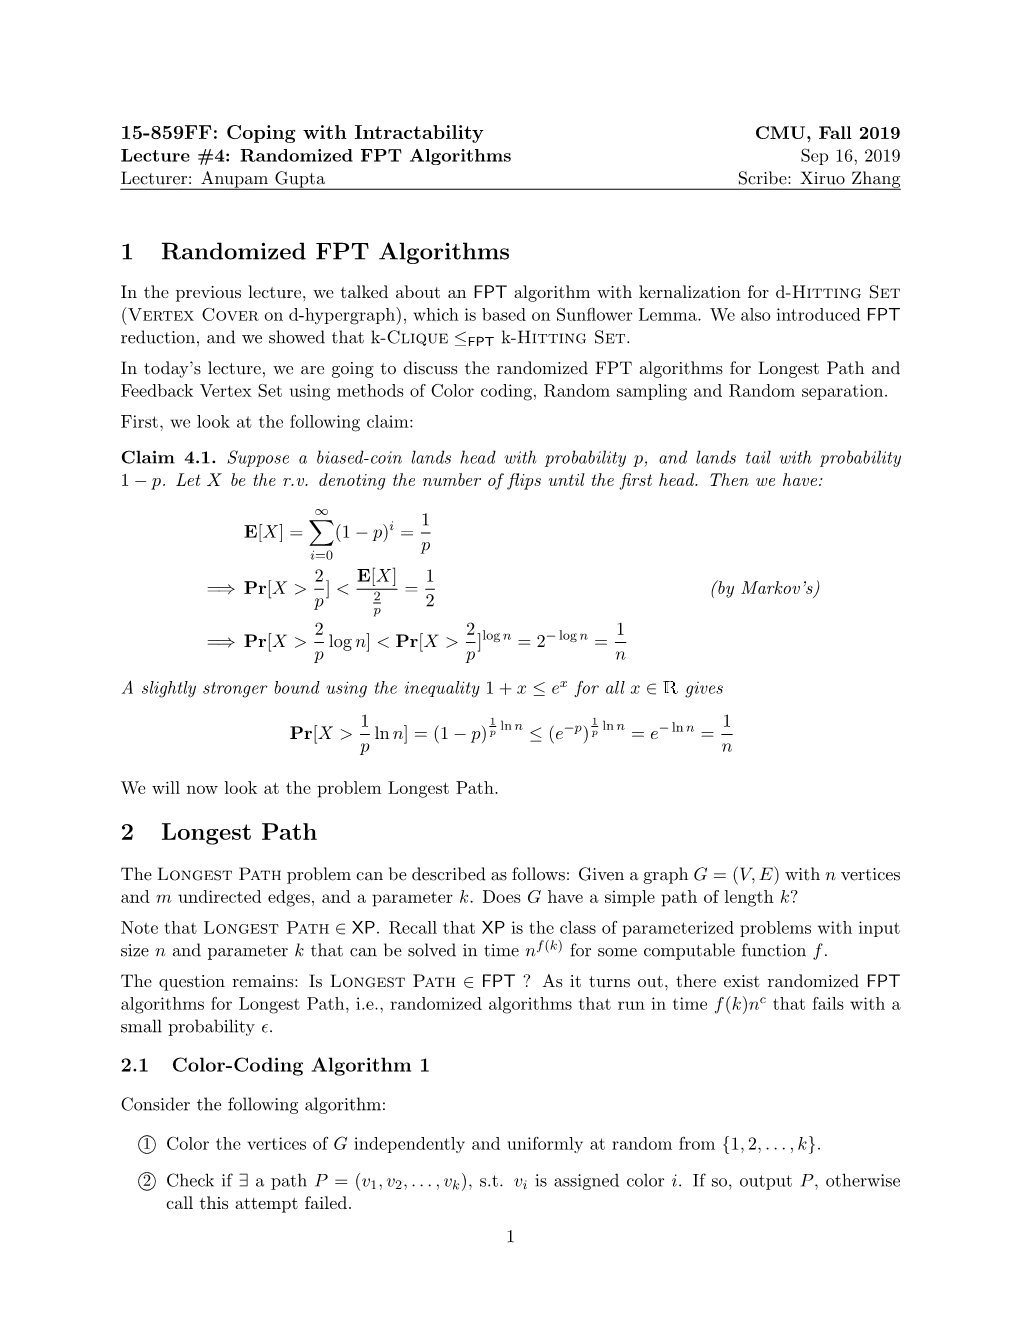 1 Randomized FPT Algorithms 2 Longest Path